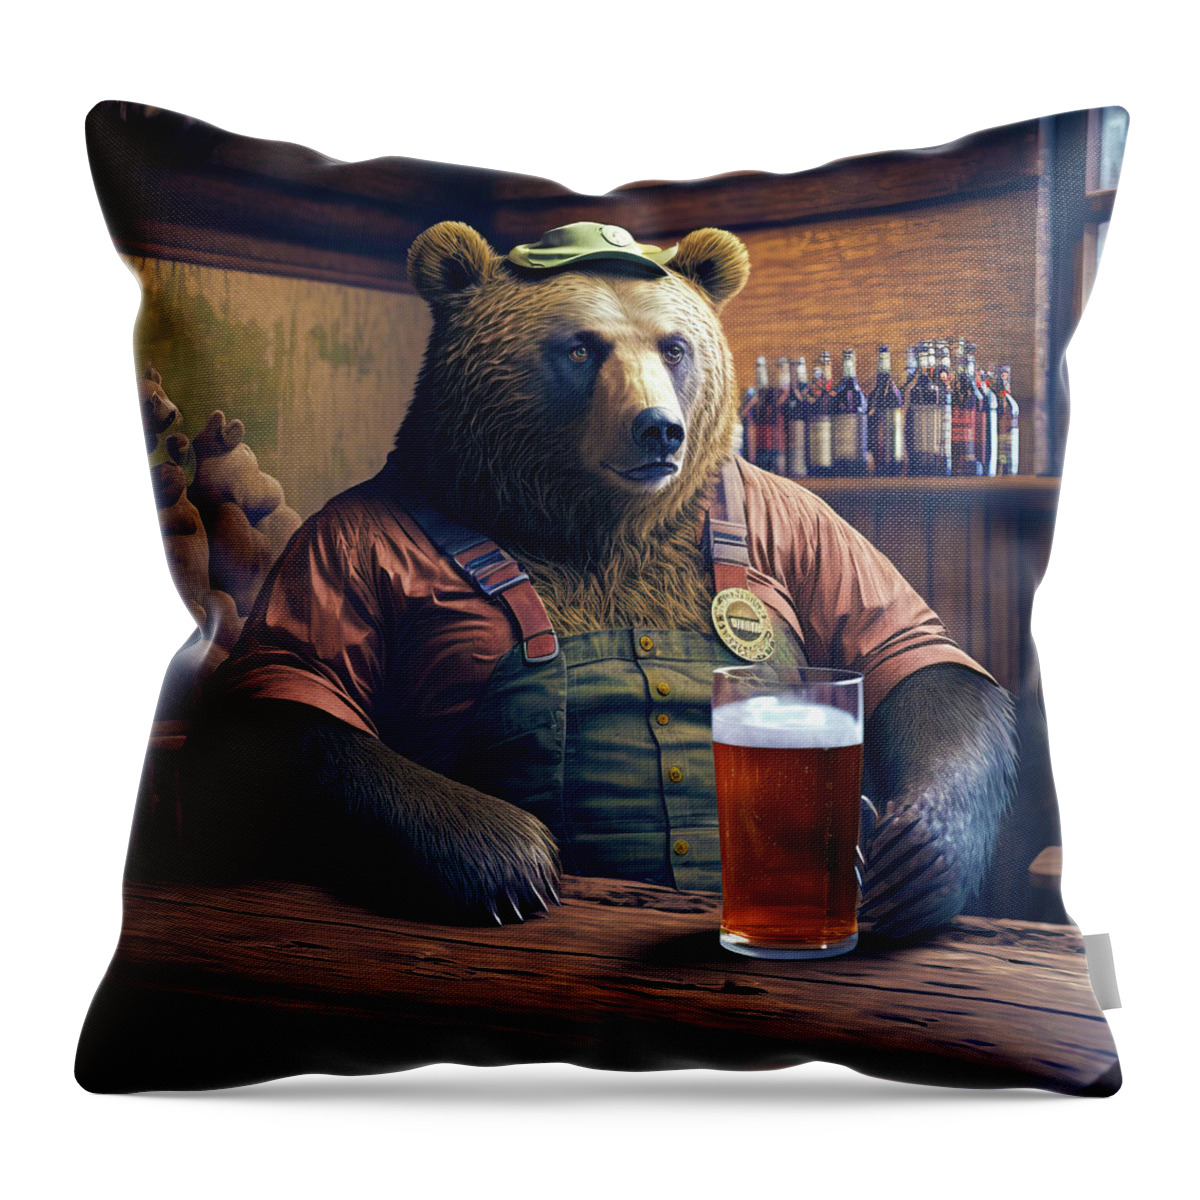 Bear Throw Pillow featuring the digital art Bear Beer Buddy 06 by Matthias Hauser